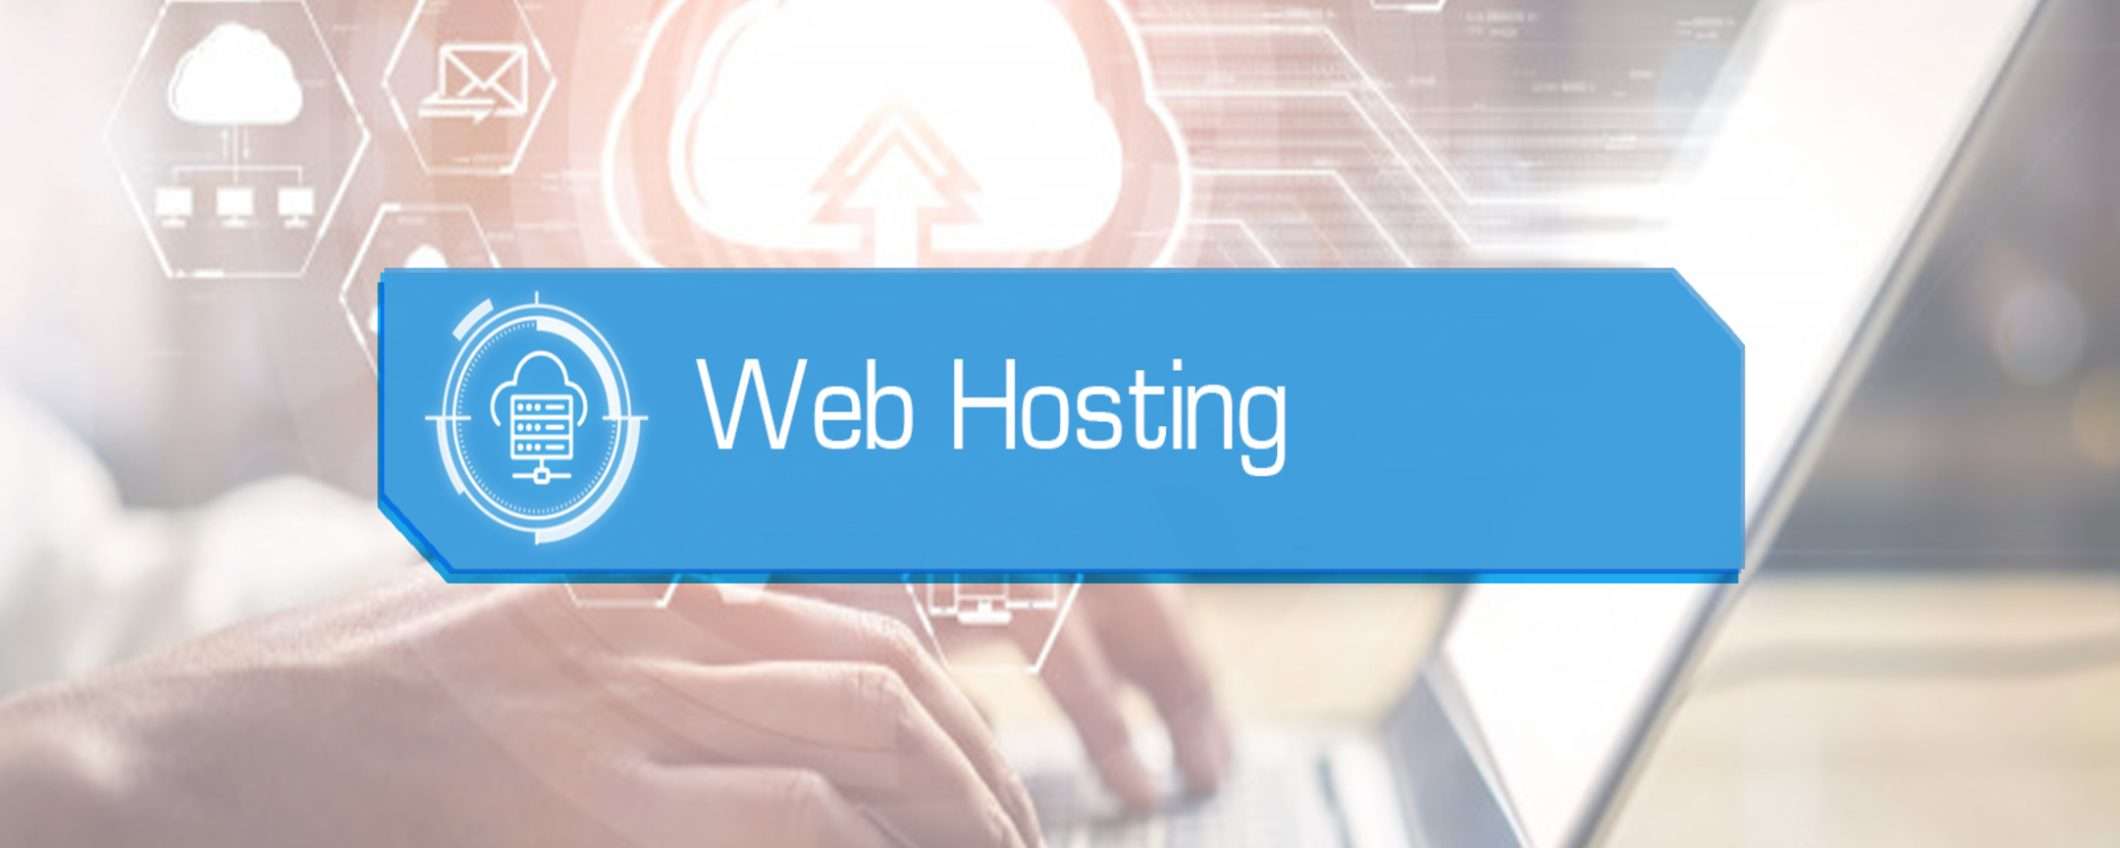 Web hosting professionale e veloce con Serverplan: SSD NVMe a soli 26€ l'anno